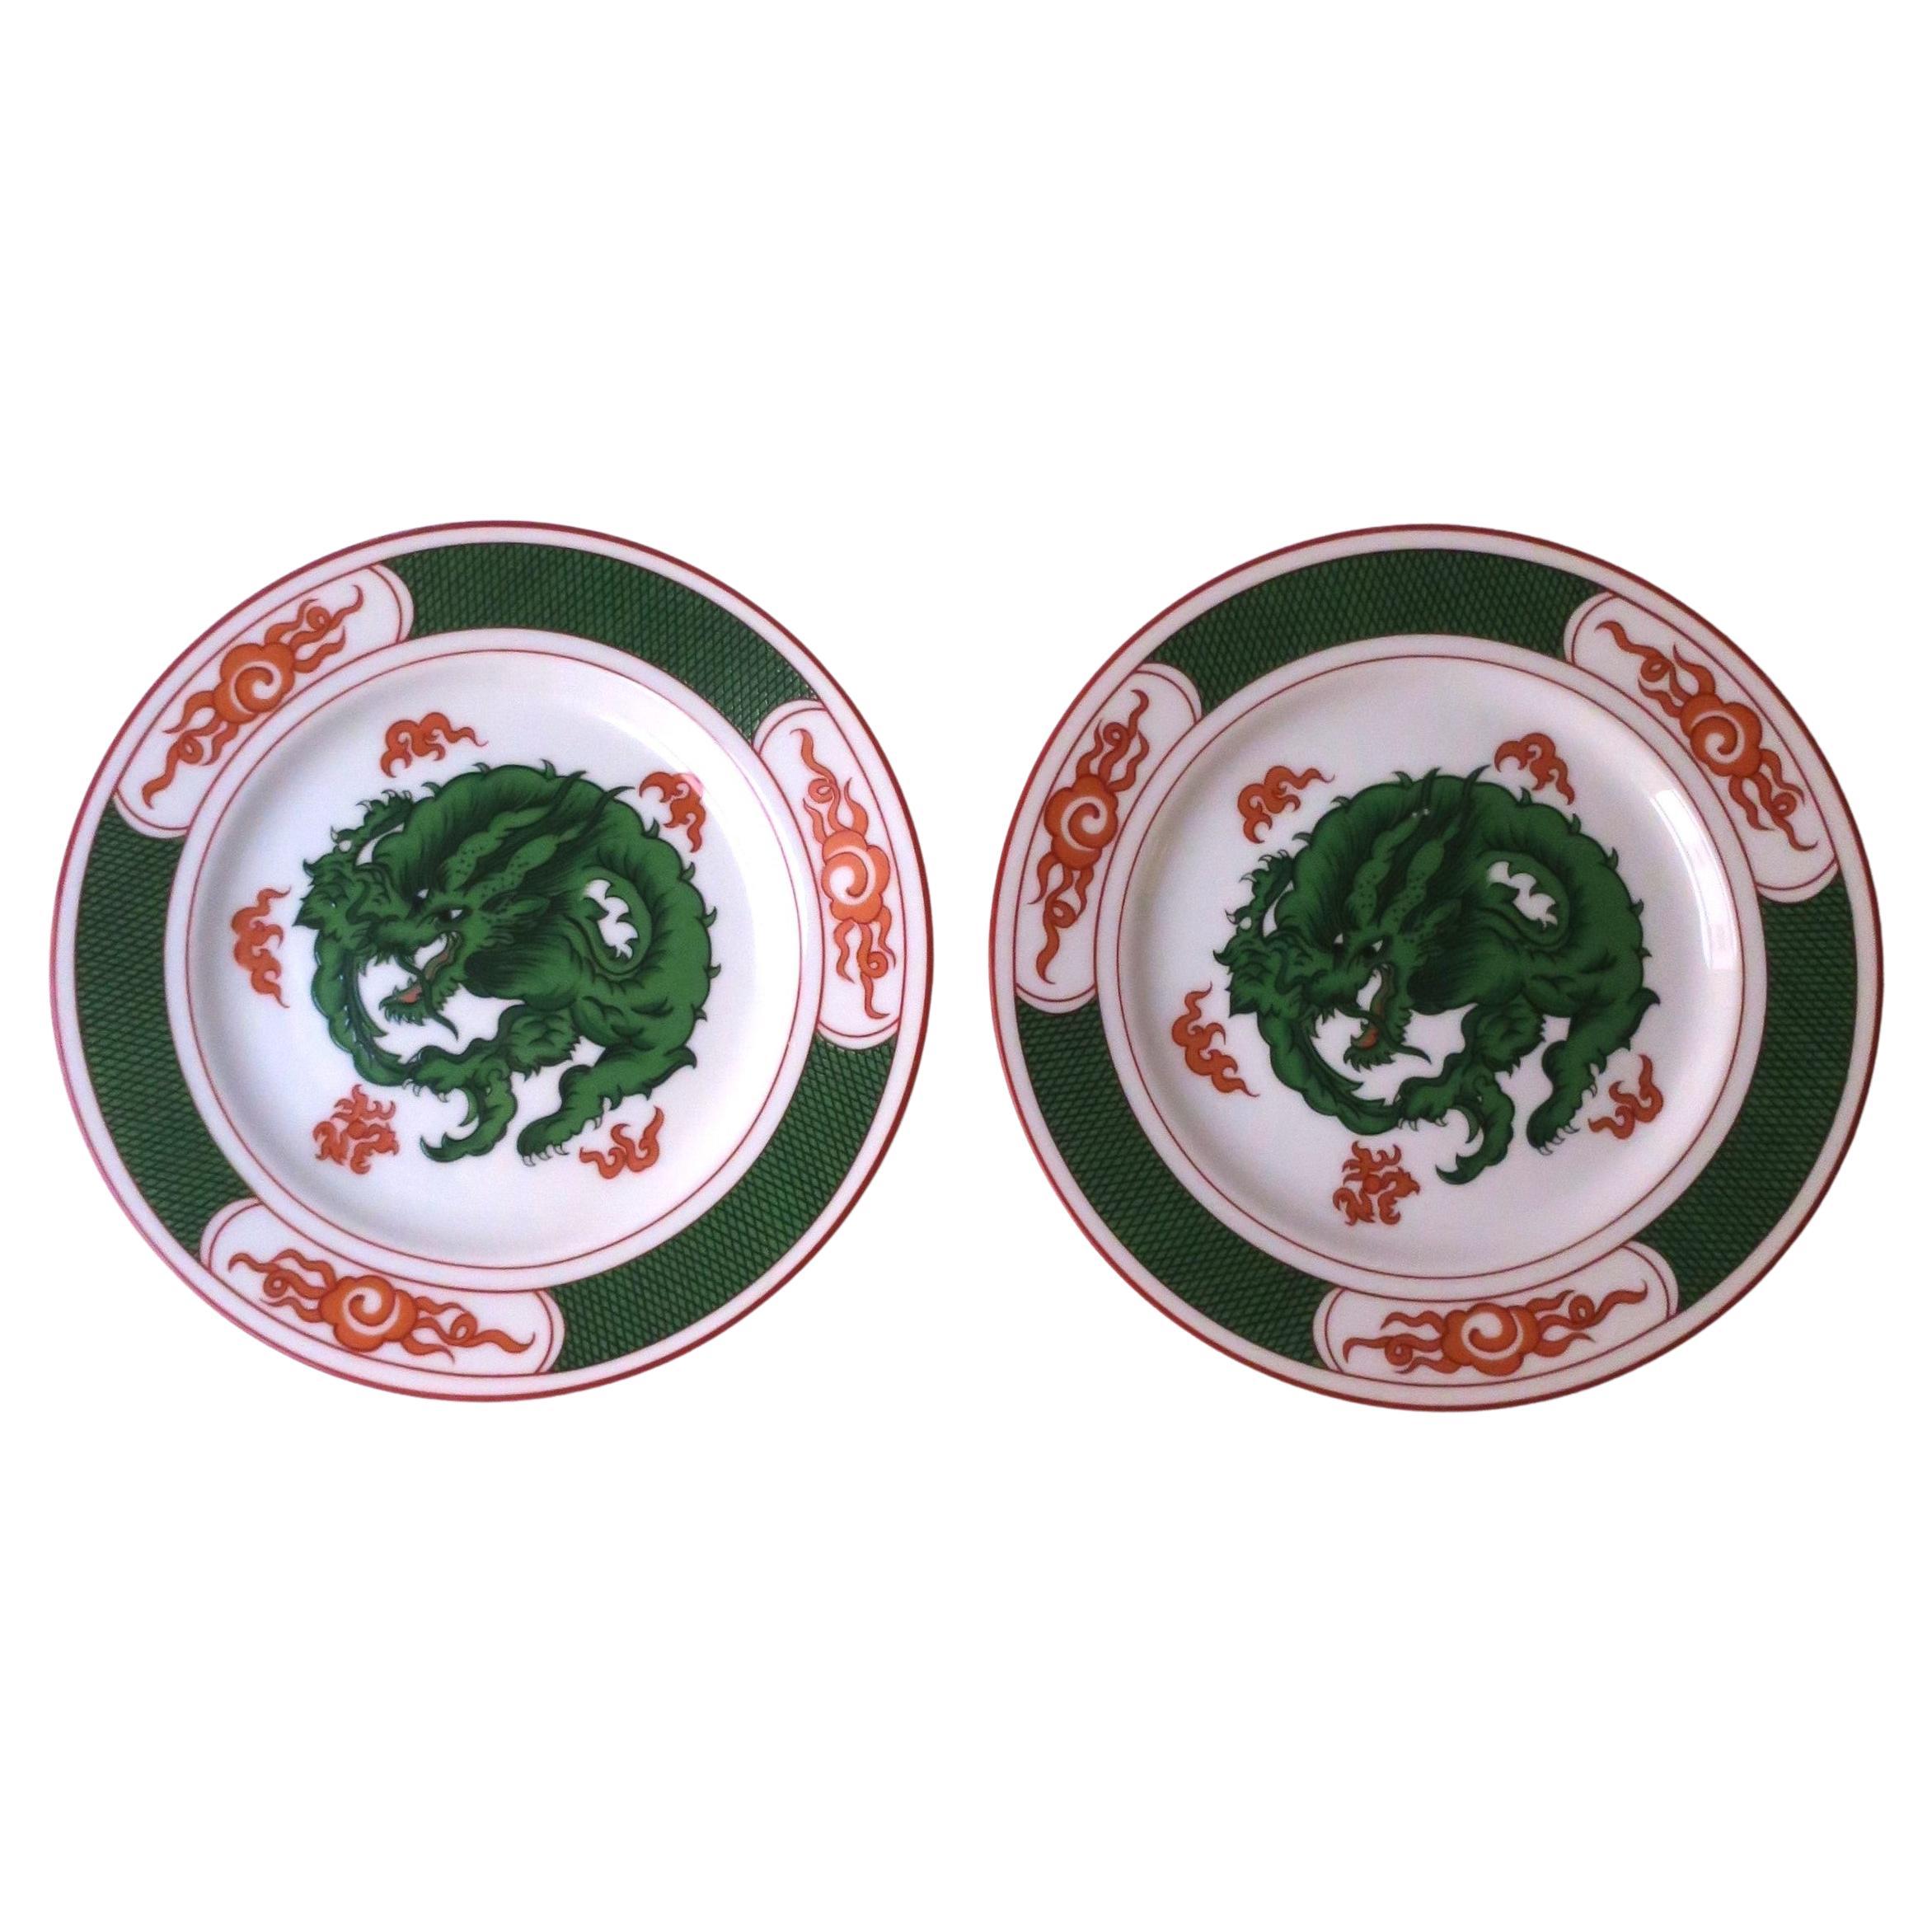 Une paire vintage de deux (2) assiettes en porcelaine blanche avec un dragon vert émeraude au centre et des flammes rouge/orange autour, vers la fin du 20e siècle, années 1980. Les assiettes sont ornées d'un remarquable motif de dragon entouré de